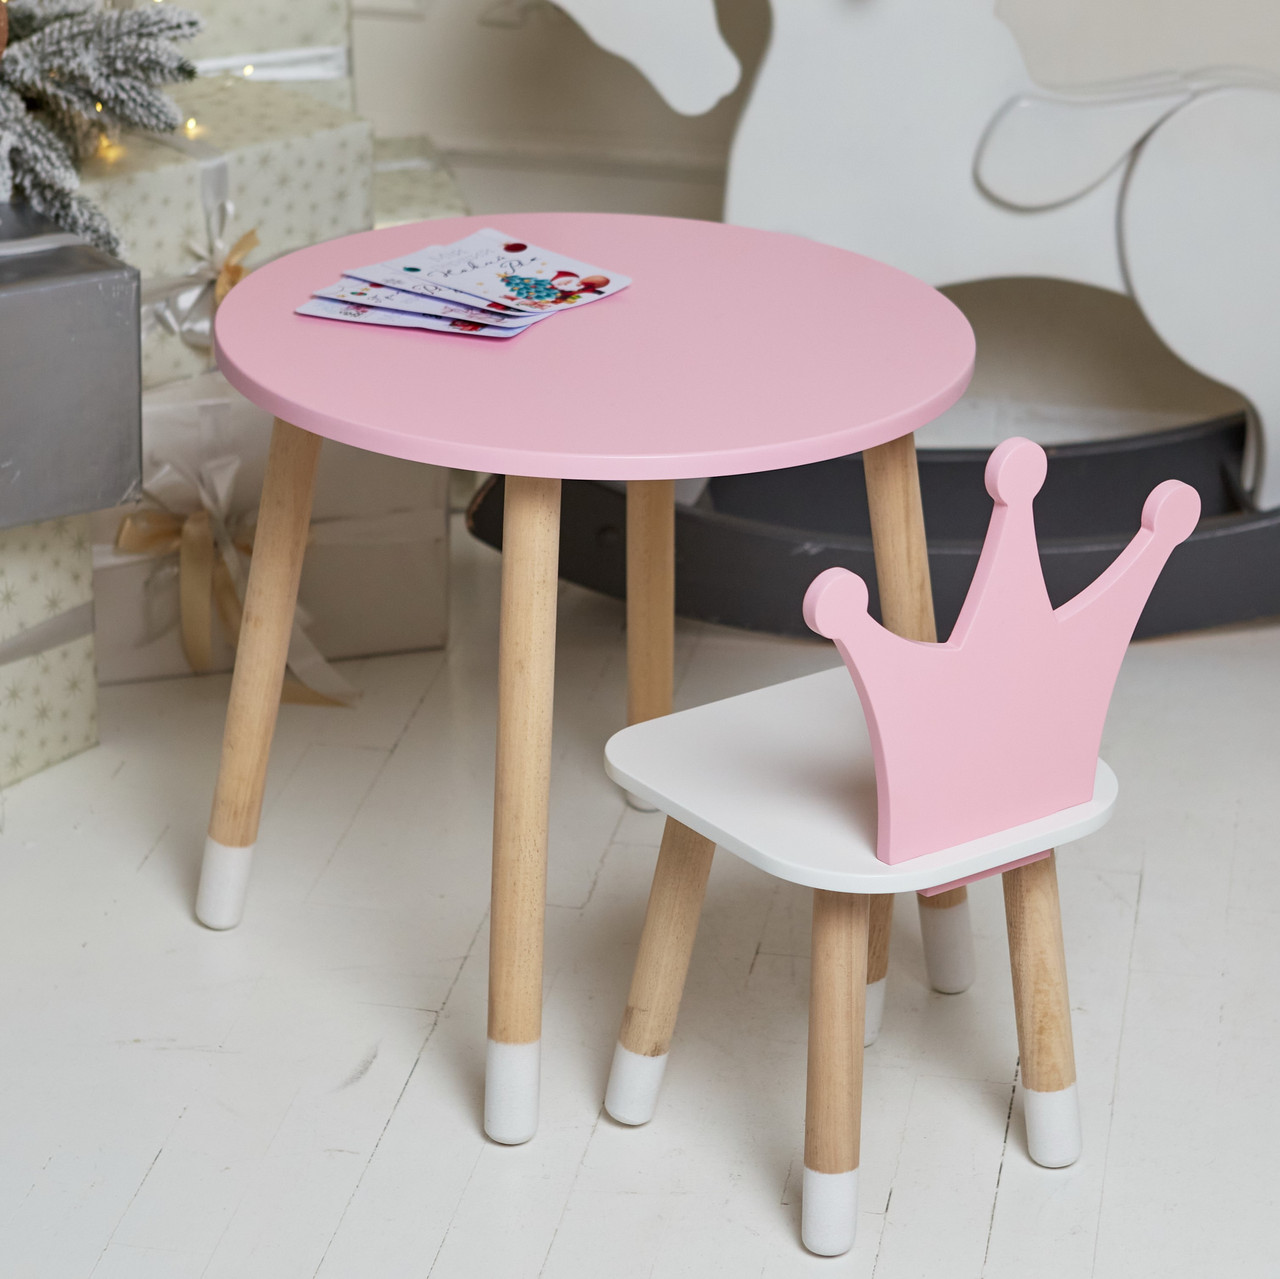 Рожевий круглий столик і стільчик дитячий корона з білим сидінням. Рожевий дитячий столик, фото 1